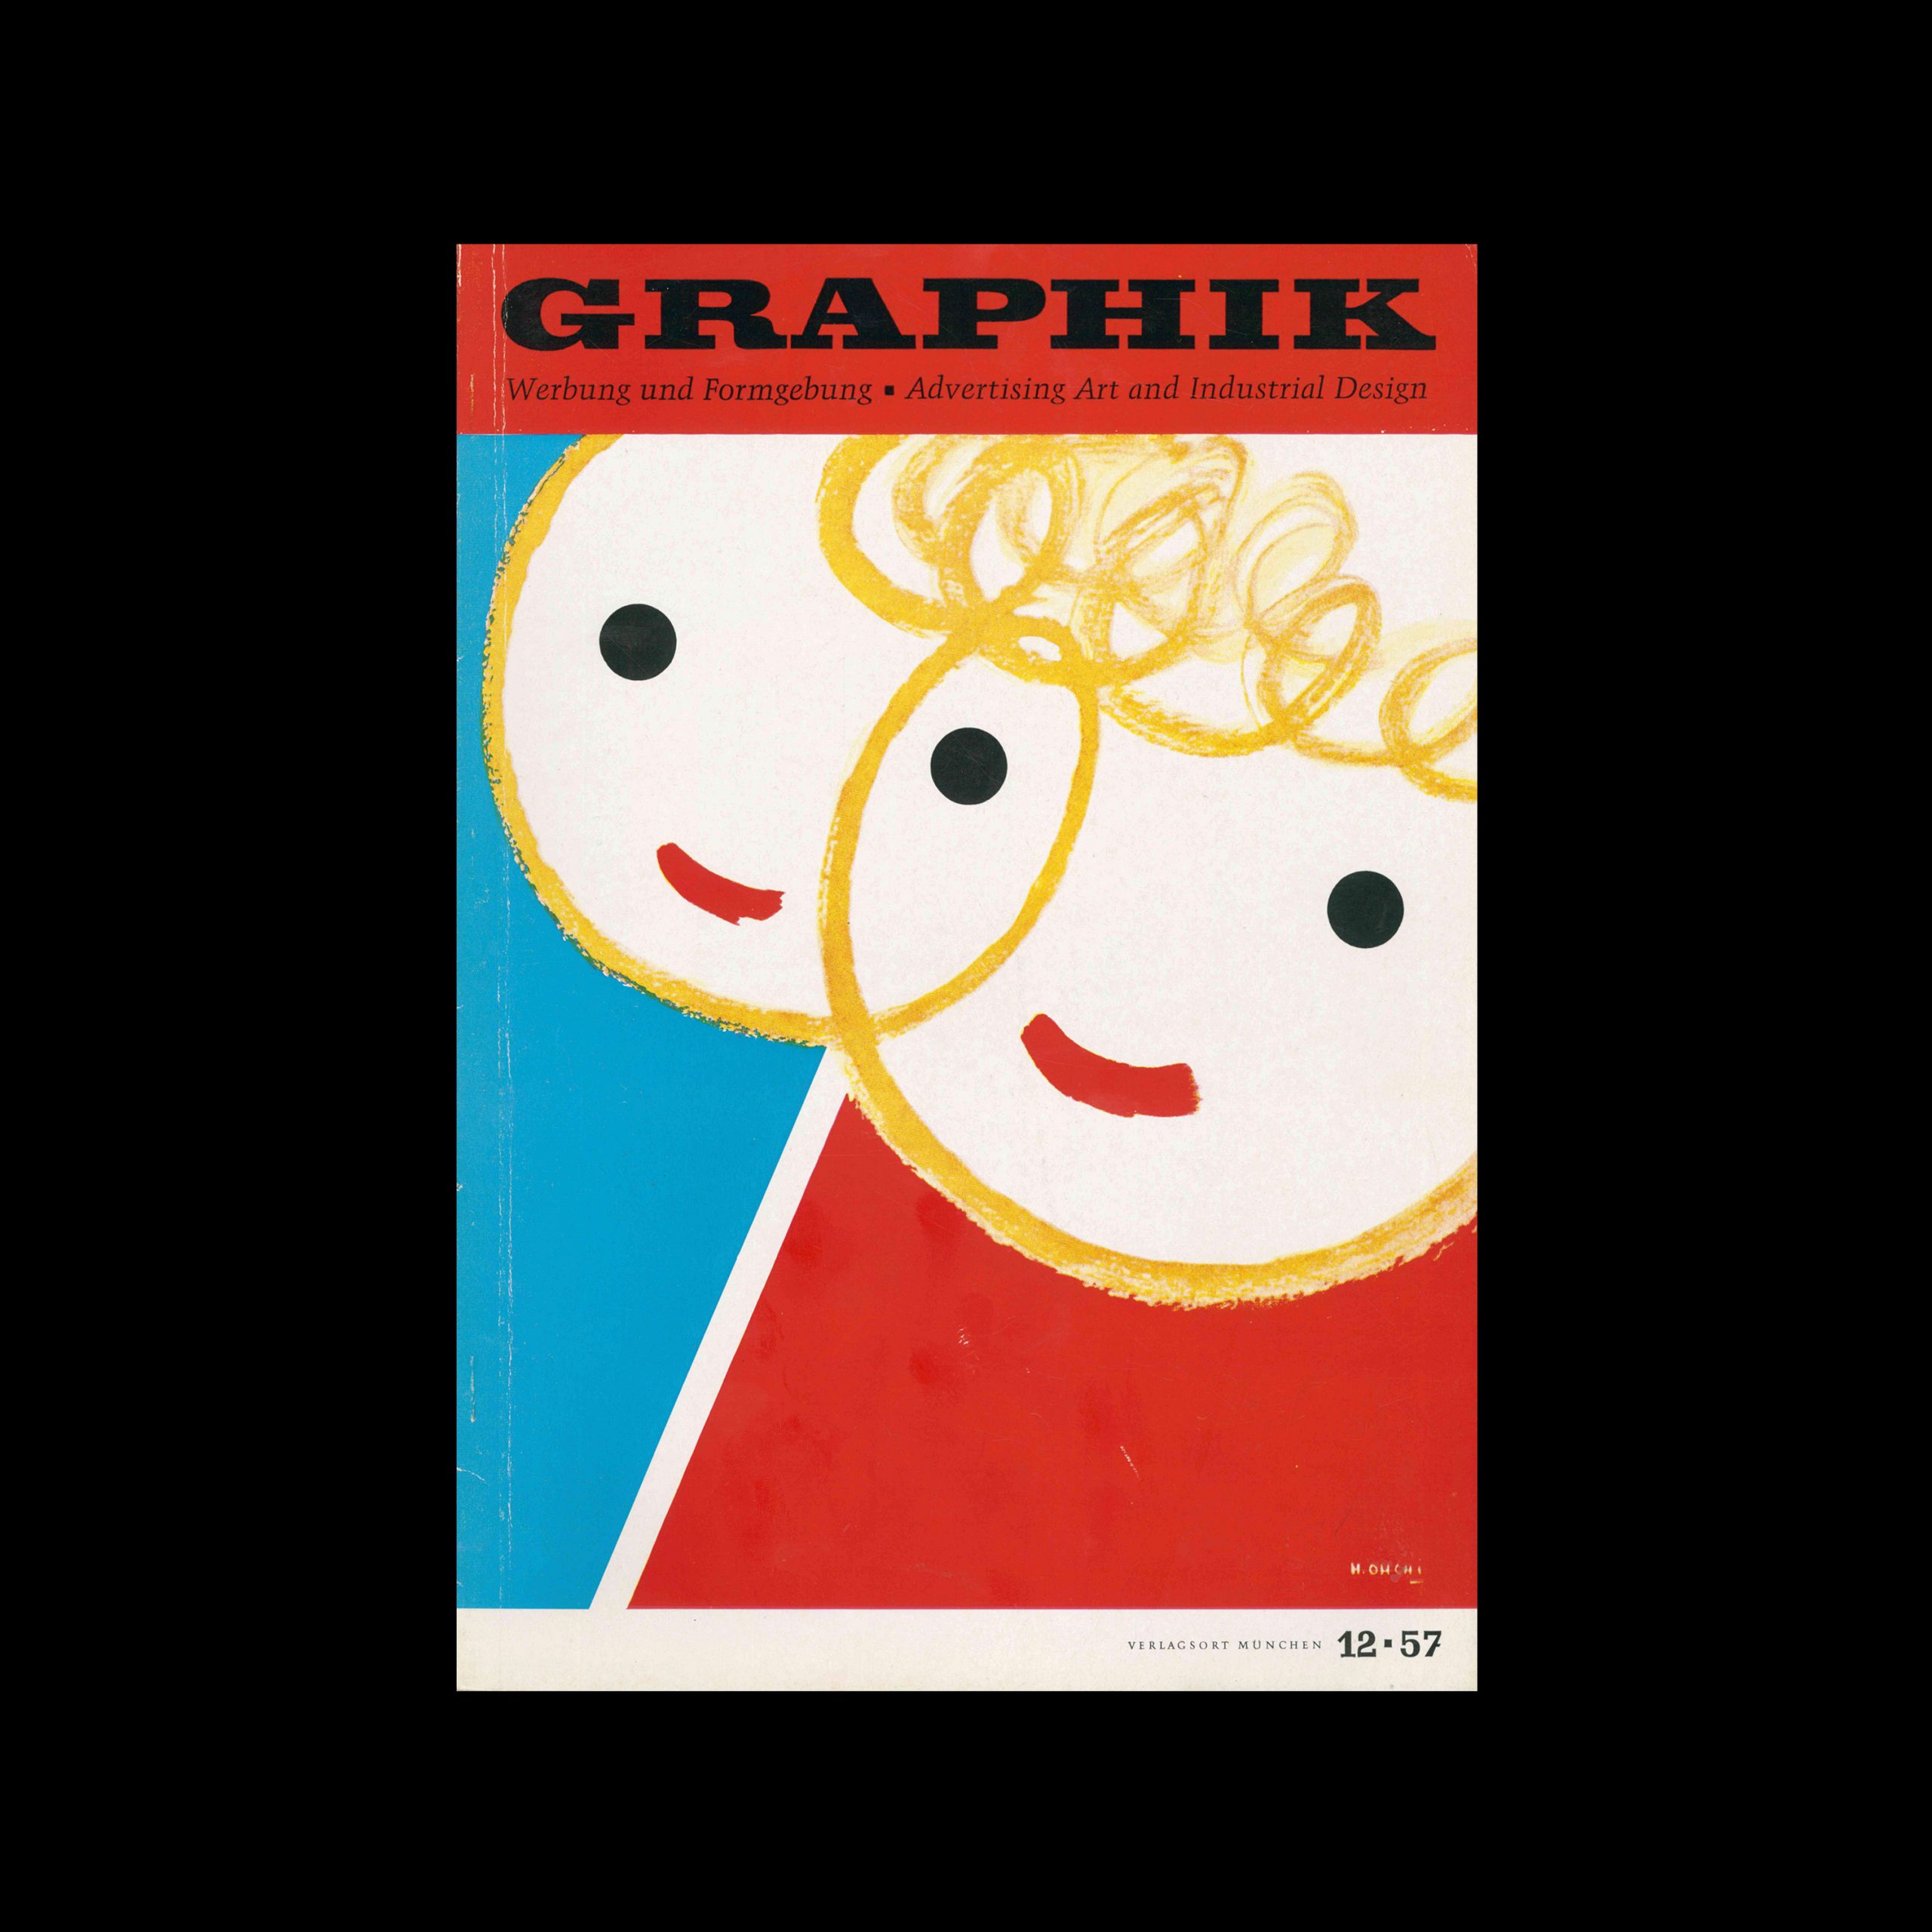 Graphik – Werbung + Formgebung, 12, 1957. Cover design by Hiroshi Ohchi